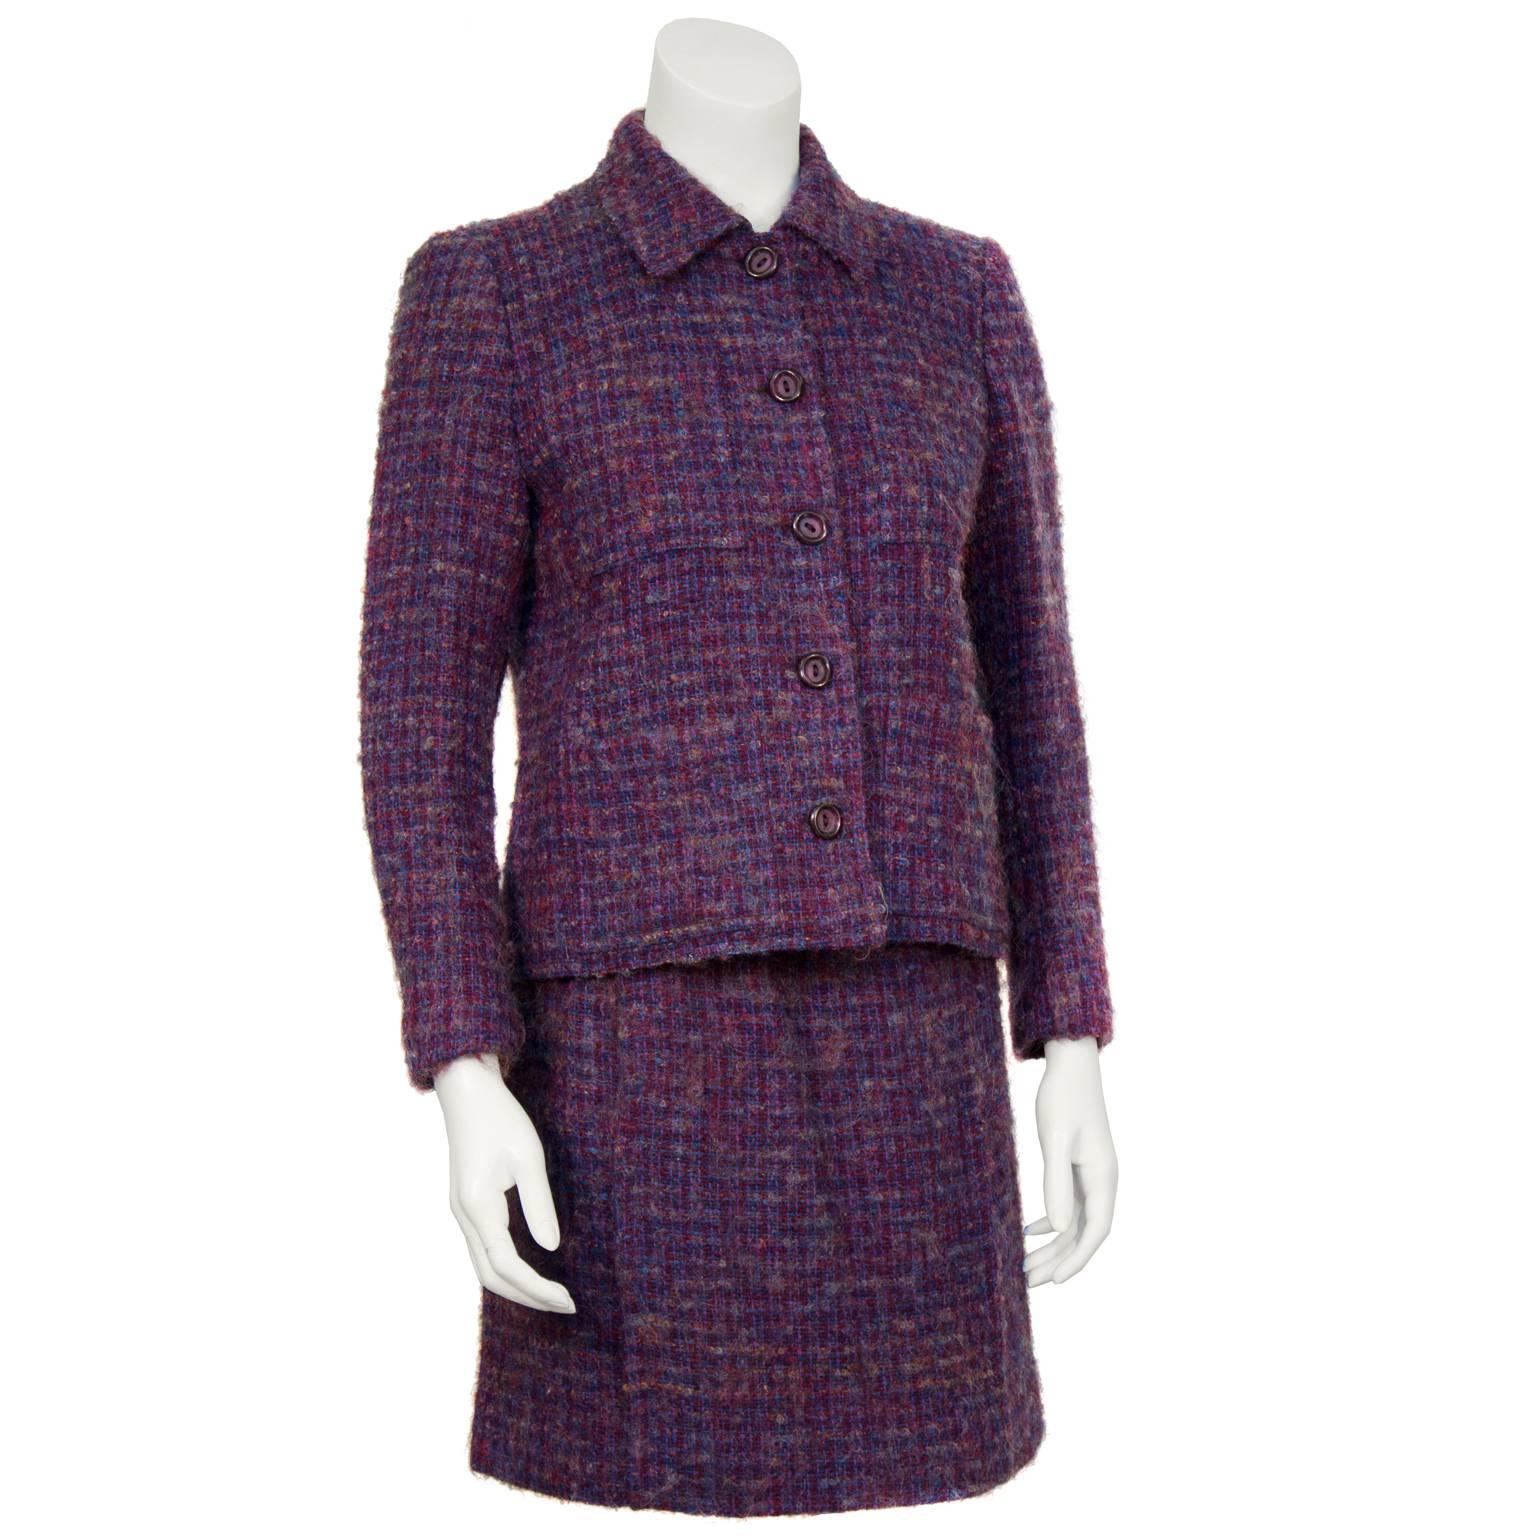 Schöne Guy Laroche gewebte Wolle Boucle Rock Anzug aus den 1960er Jahren. Die Jacke hat einen spitzen Kragen und vier aufgesetzte Taschen auf der Vorderseite. Der Rock lässt sich an der hinteren linken Hüfte mit einem Reißverschluss schließen. In